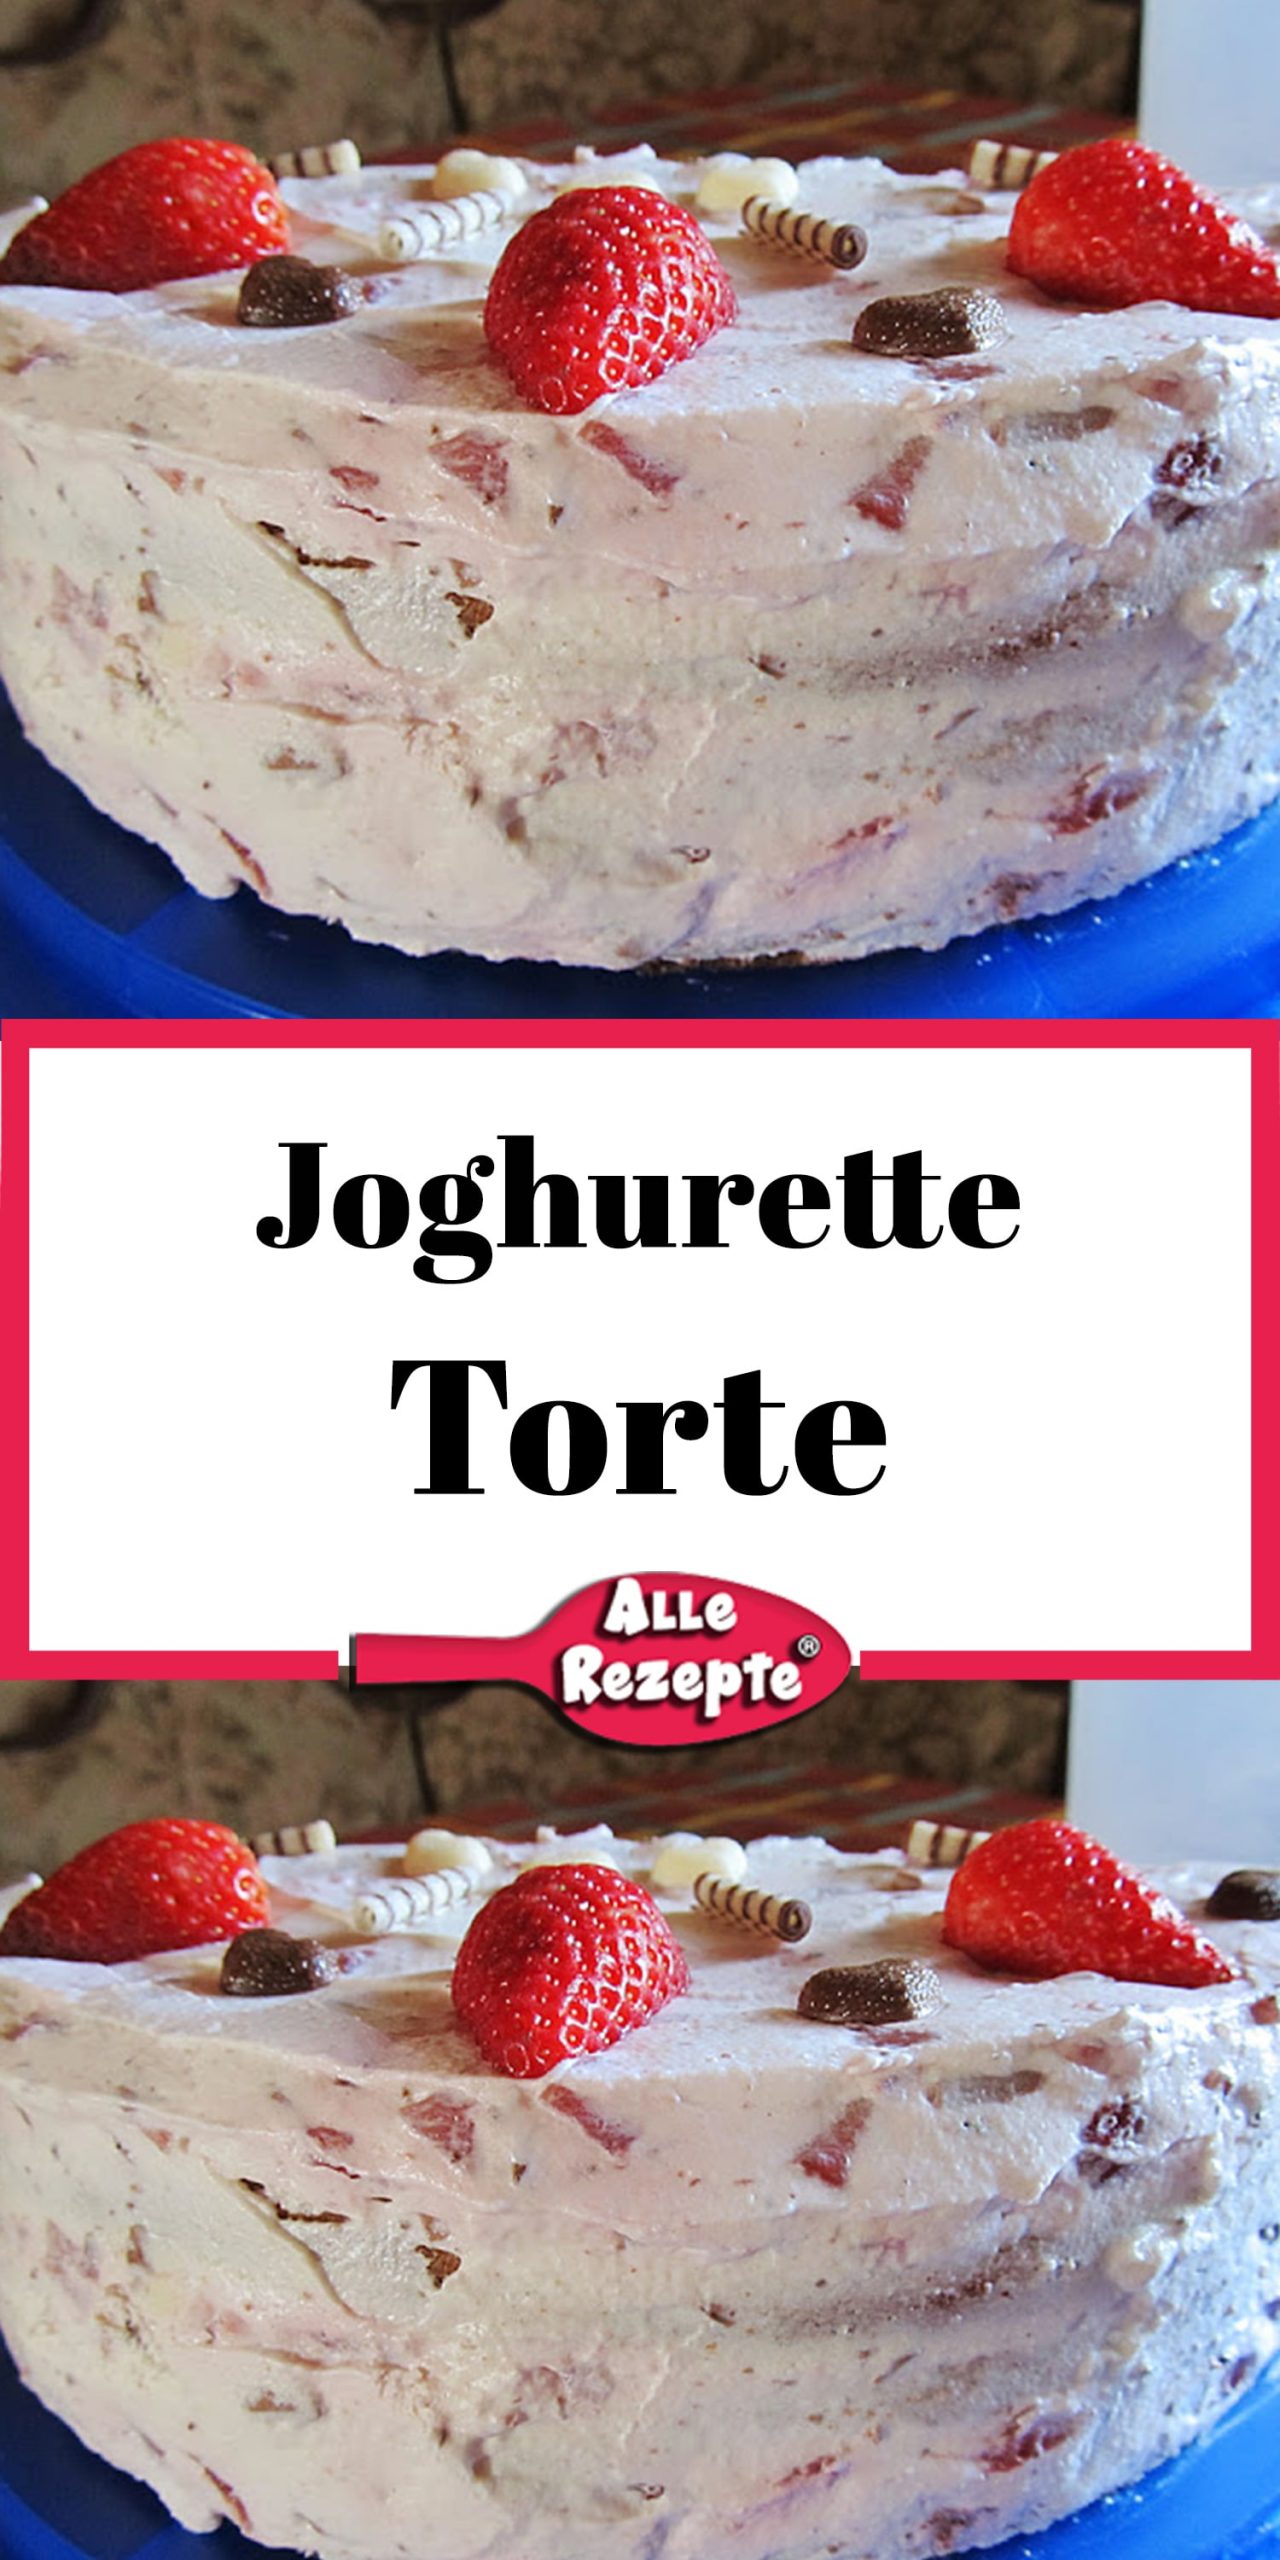 Joghurette Torte - Alle Rezepte